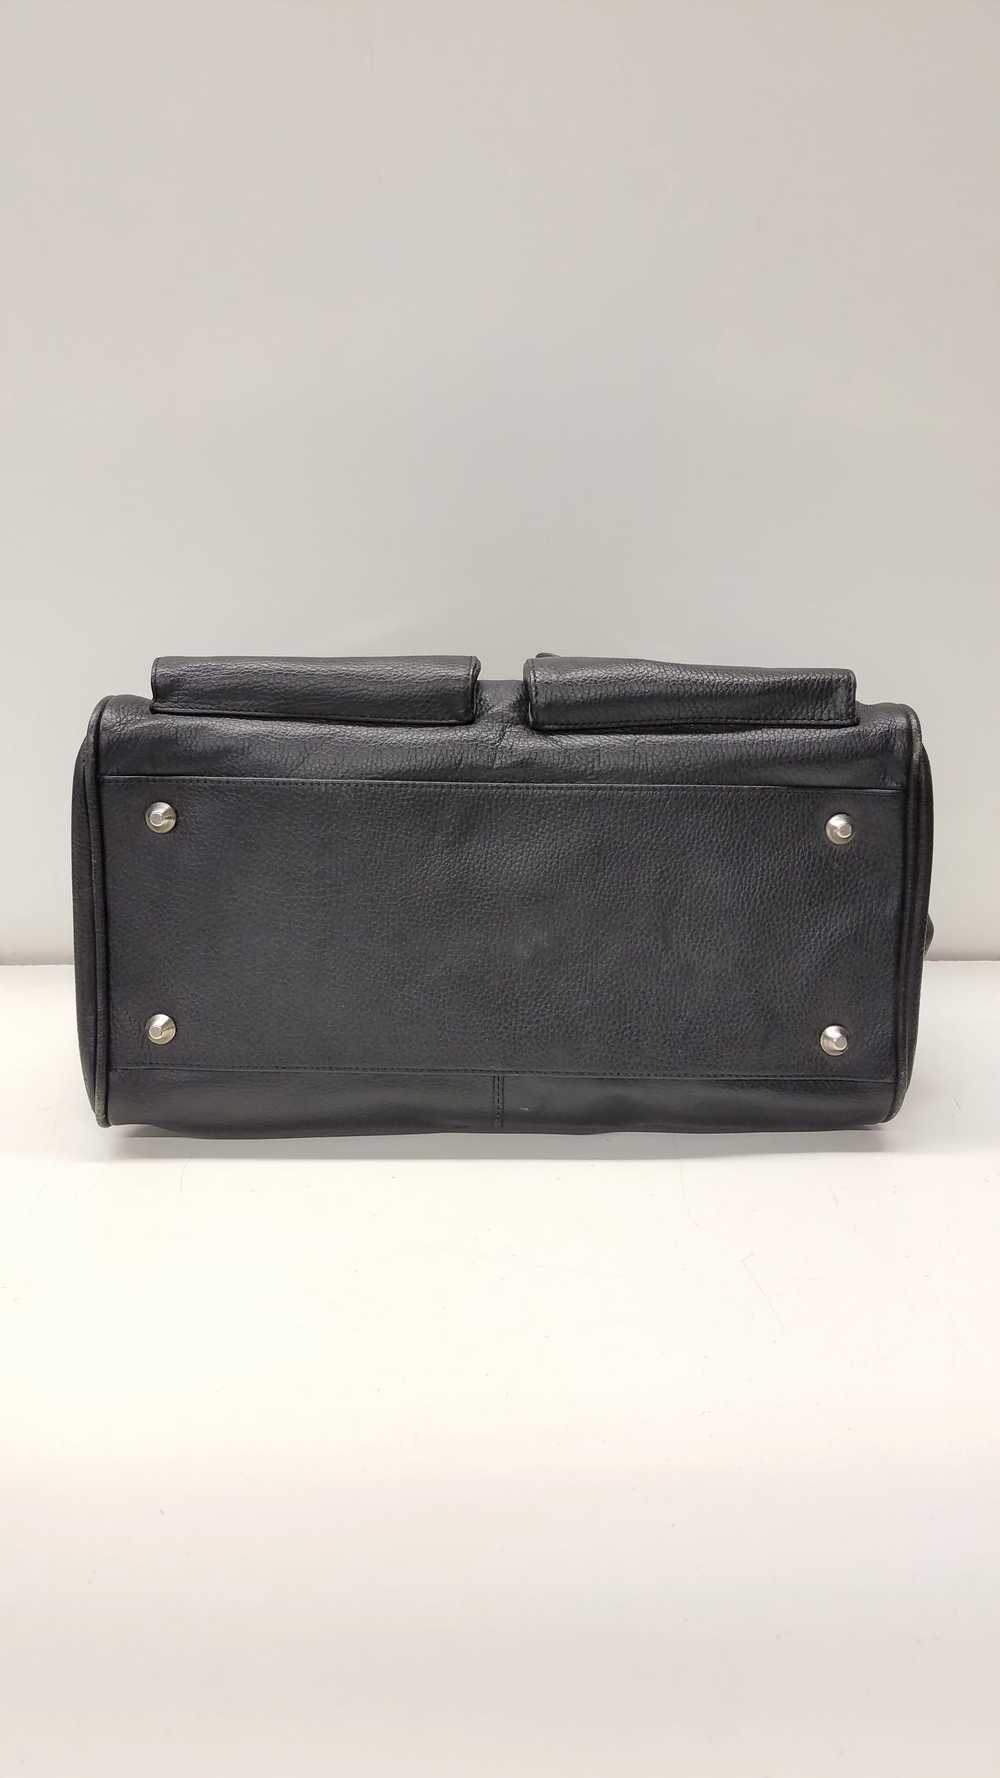 Christine Price Leather Pebbled Shoulder Bag Black - image 4